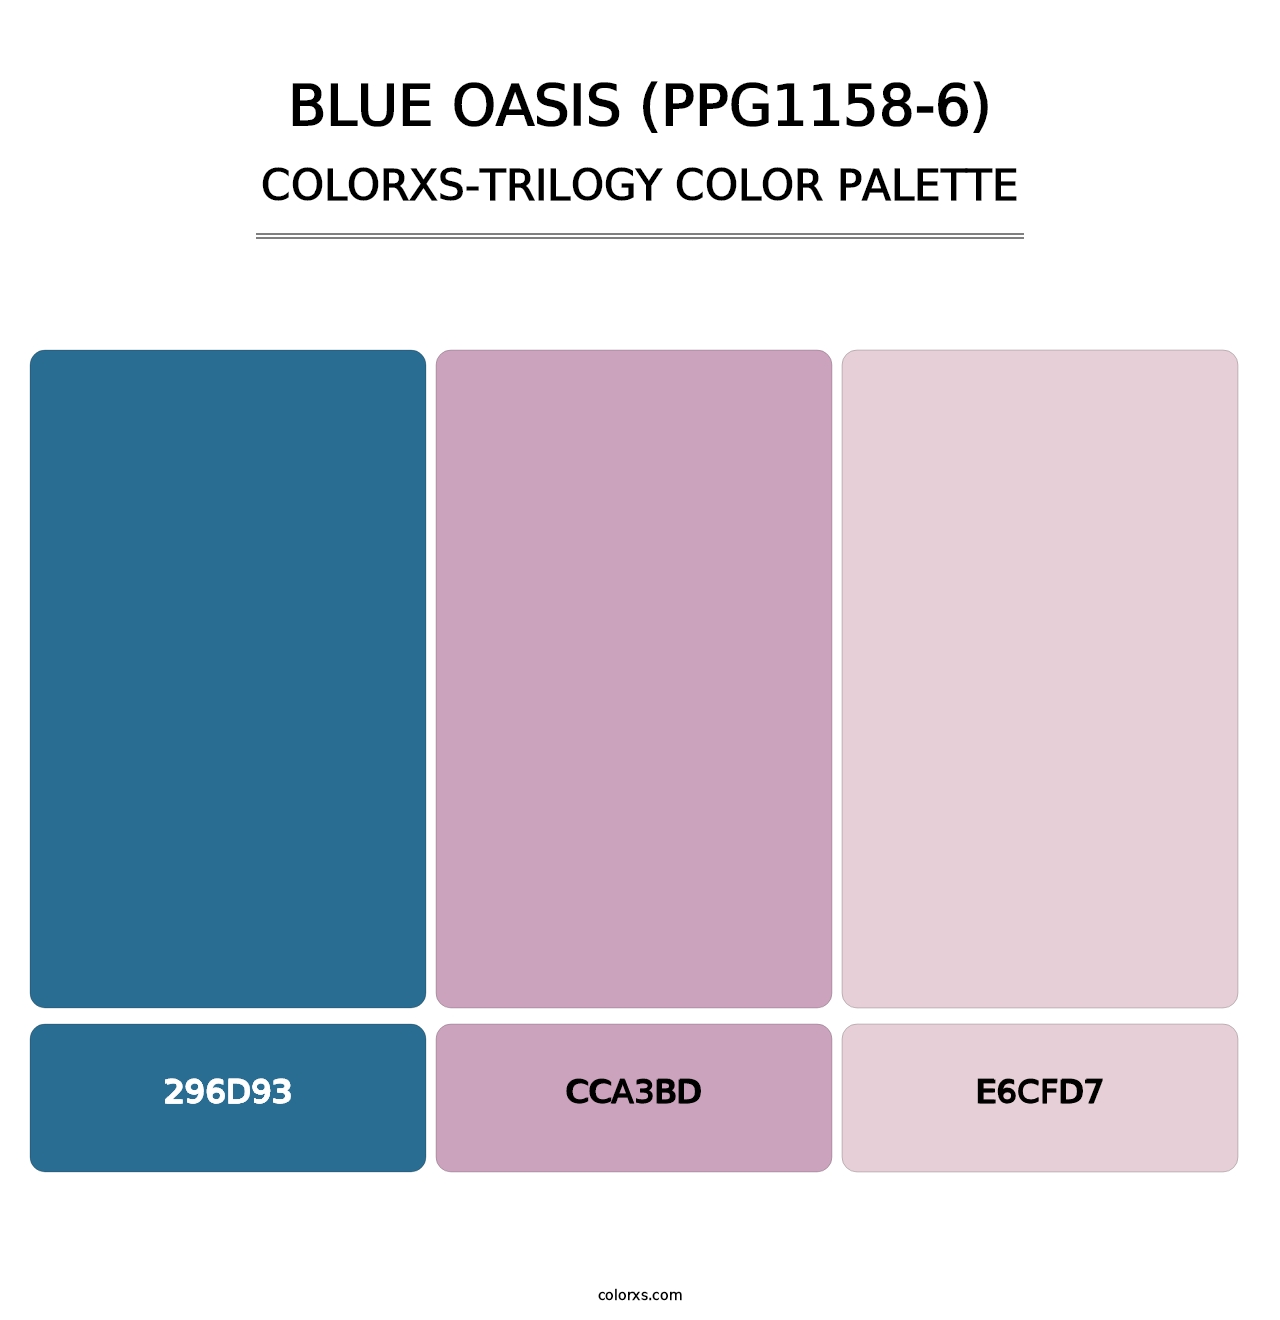 Blue Oasis (PPG1158-6) - Colorxs Trilogy Palette